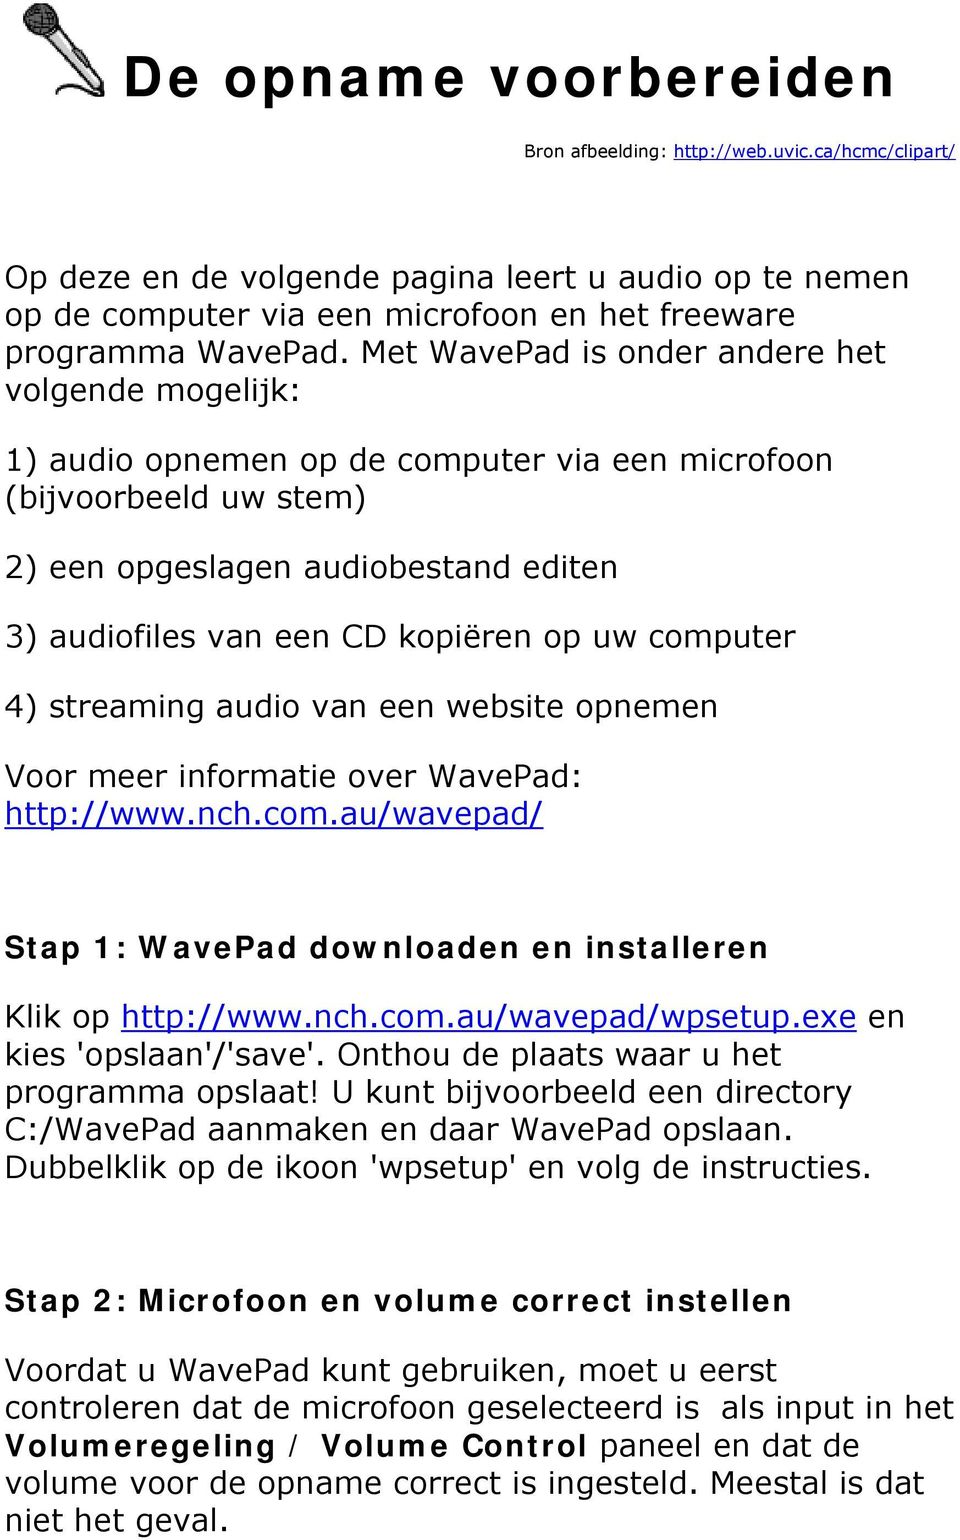 uw computer 4) streaming audio van een website opnemen Voor meer informatie over WavePad: http://www.nch.com.au/wavepad/ Stap 1: WavePad downloaden en installeren Klik op http://www.nch.com.au/wavepad/wpsetup.